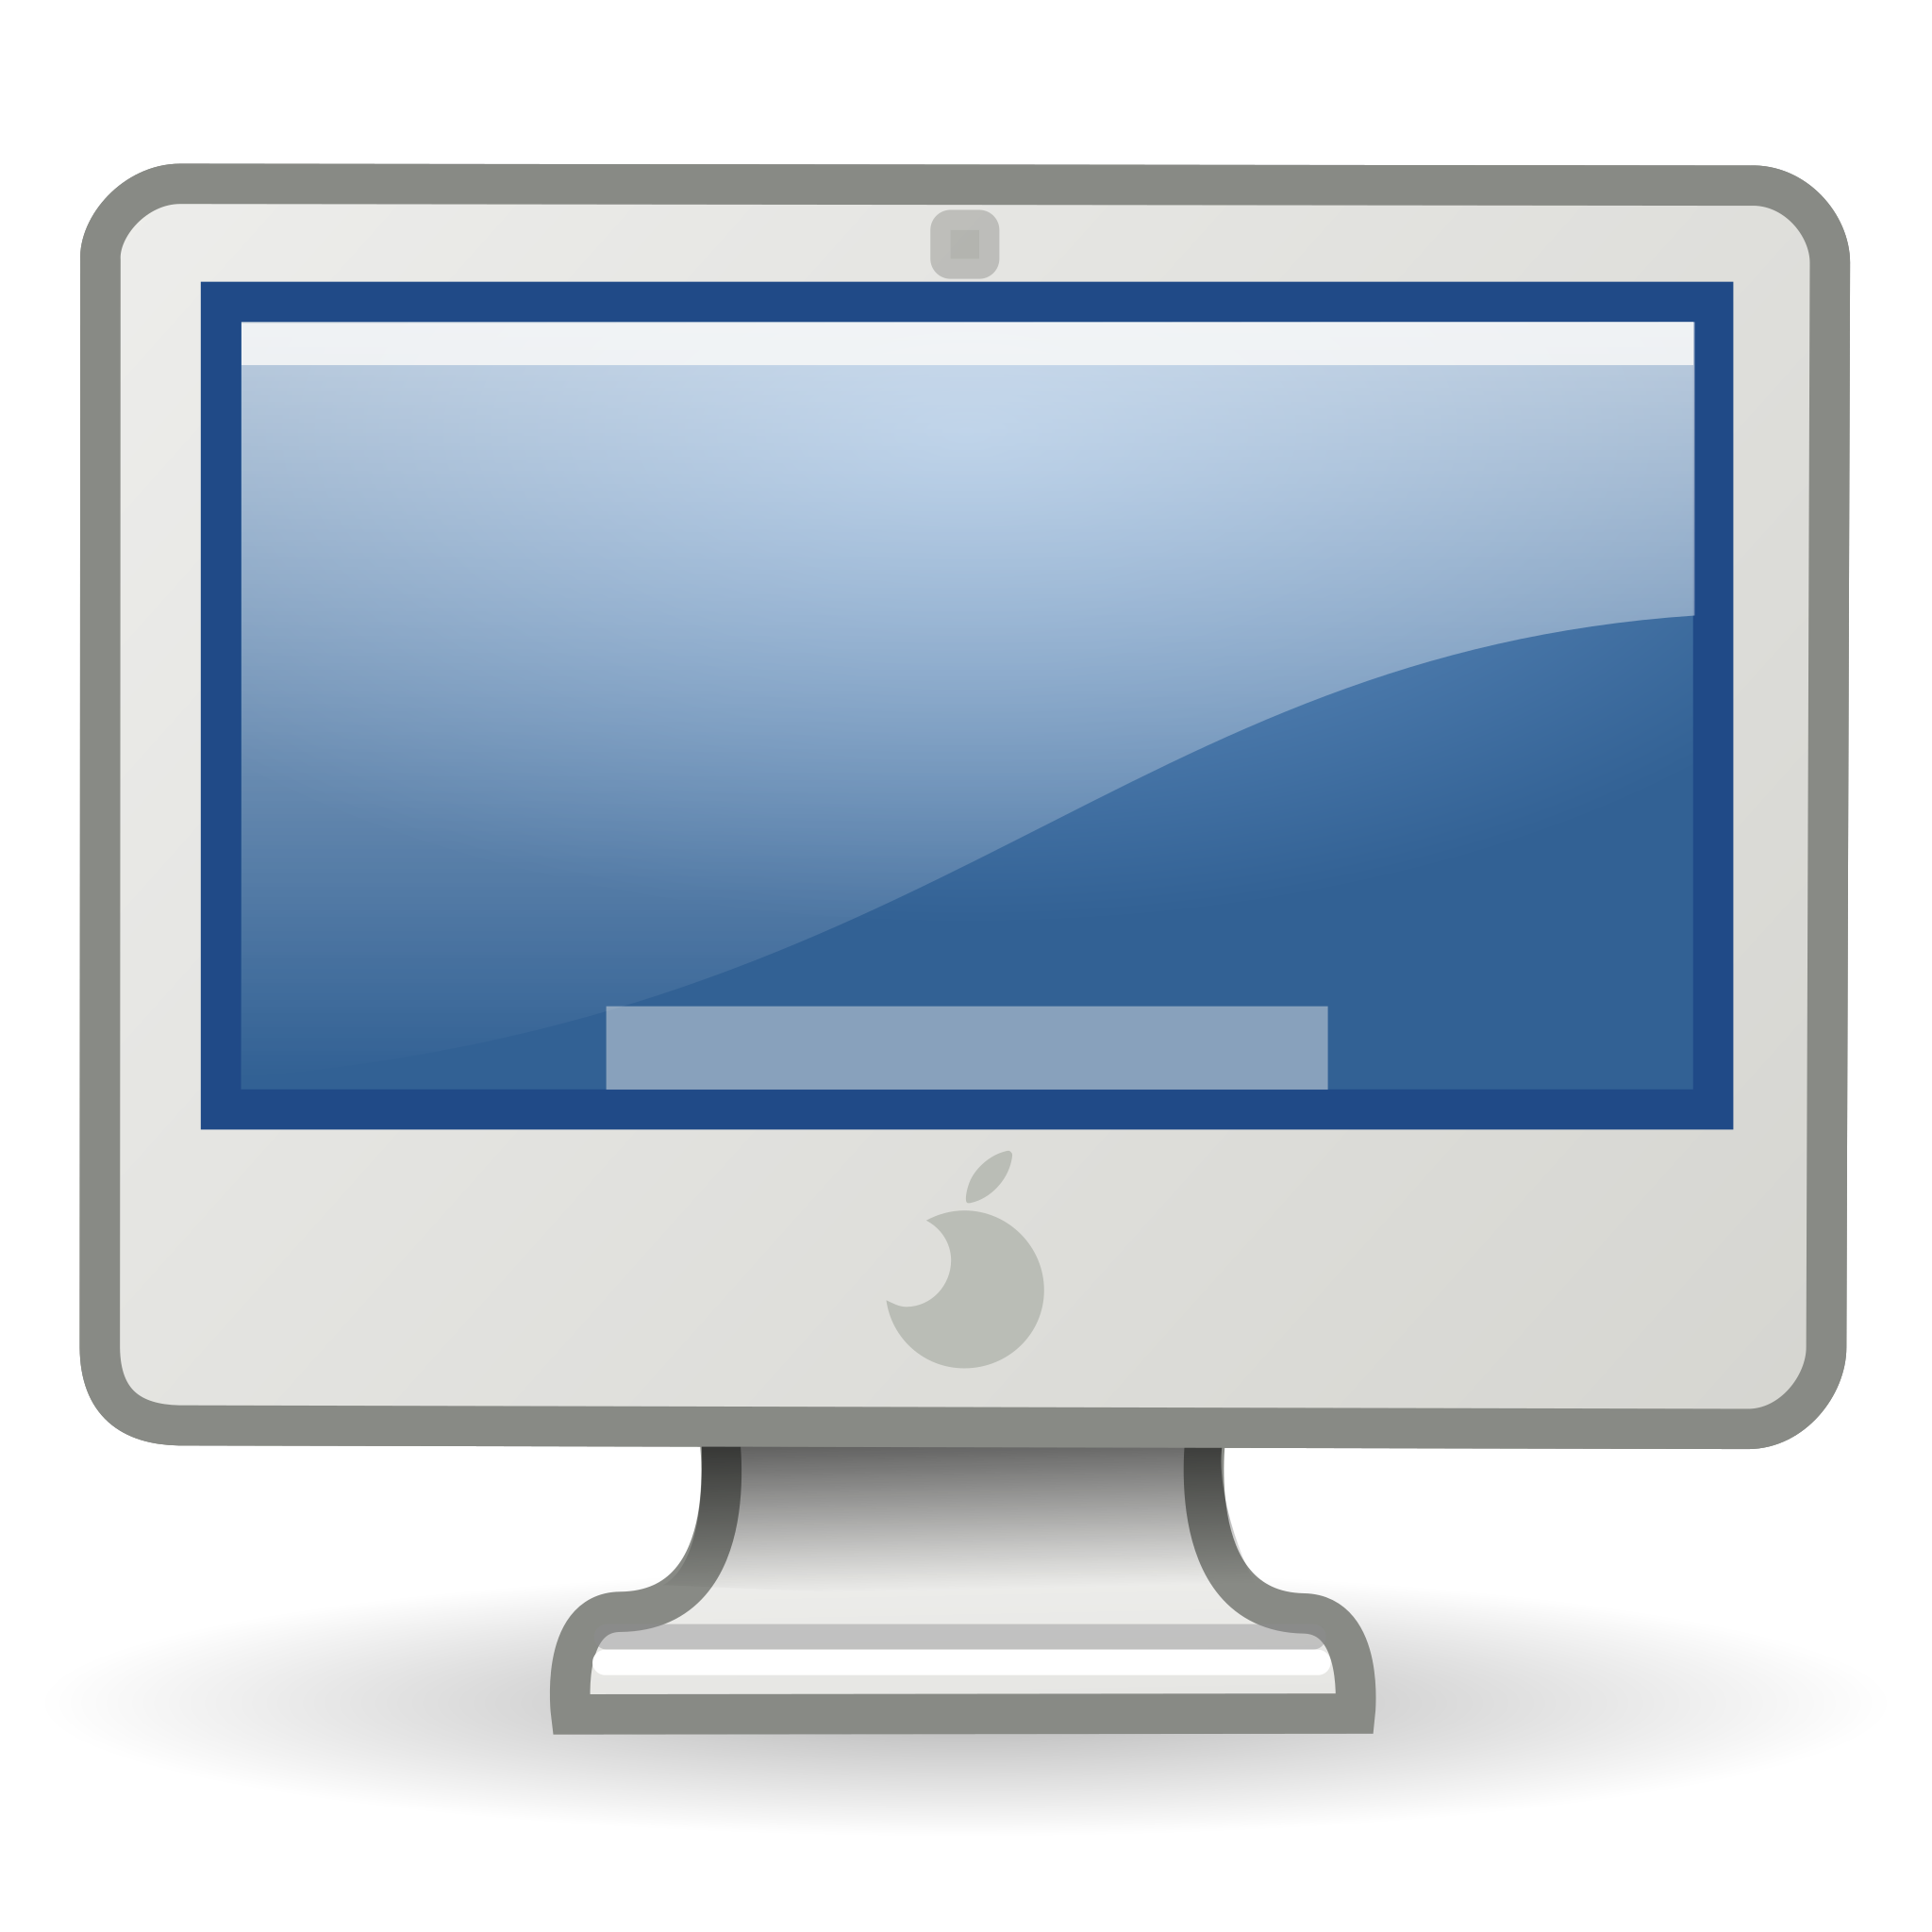 iMac G5 - Wikipedia